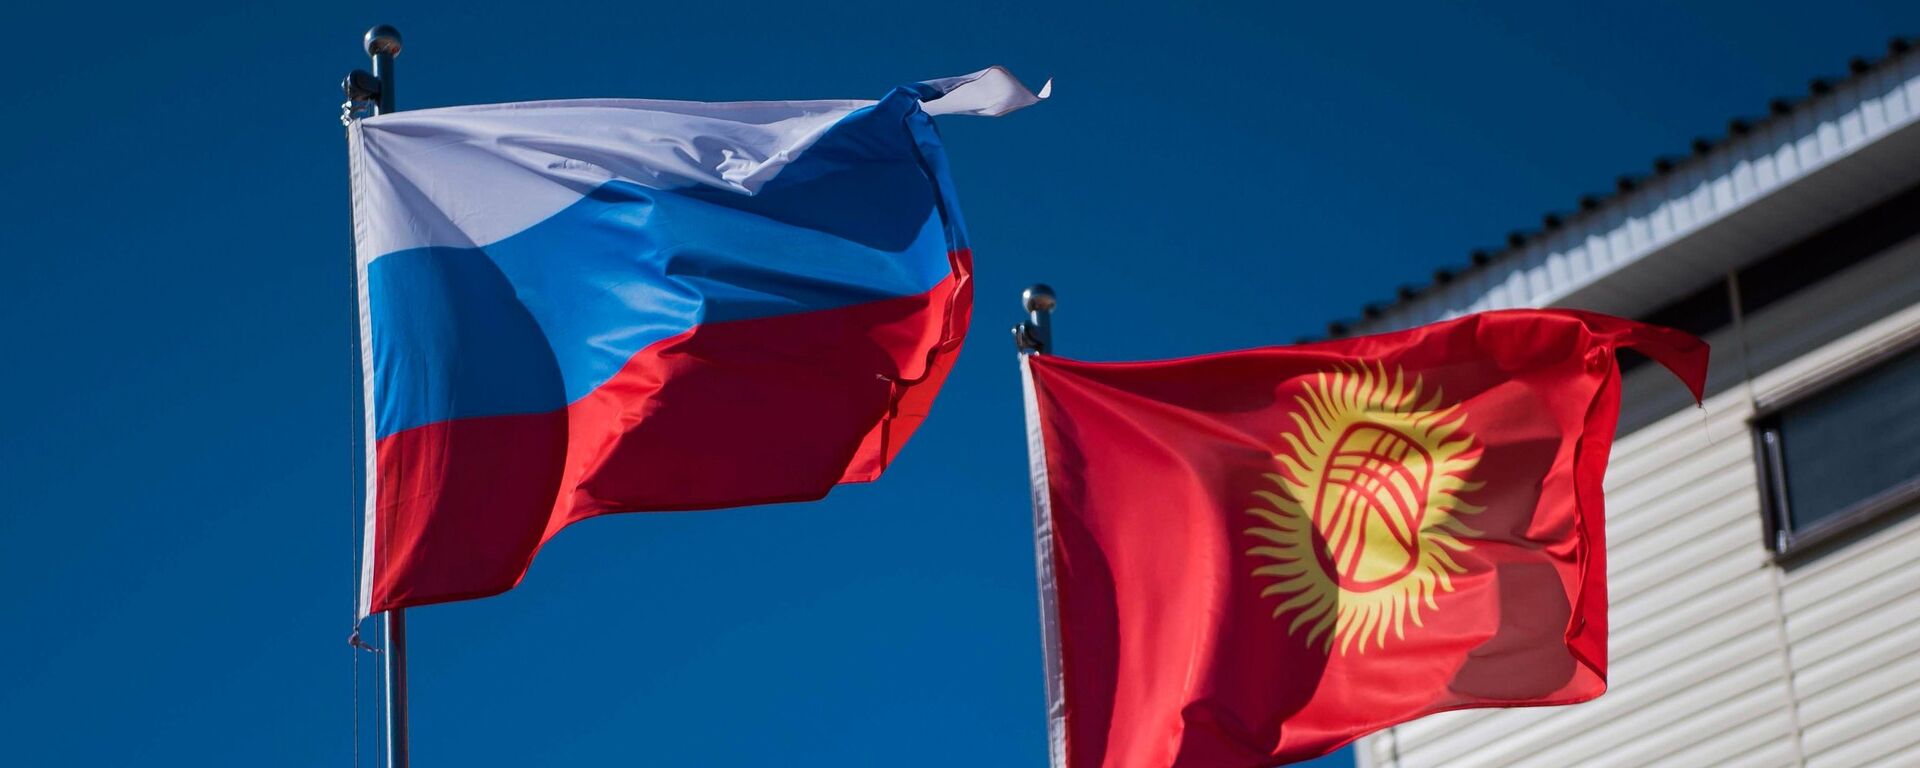 Государственные флаги Кыргызстана и России. Архивное фото - Sputnik Кыргызстан, 1920, 14.10.2021